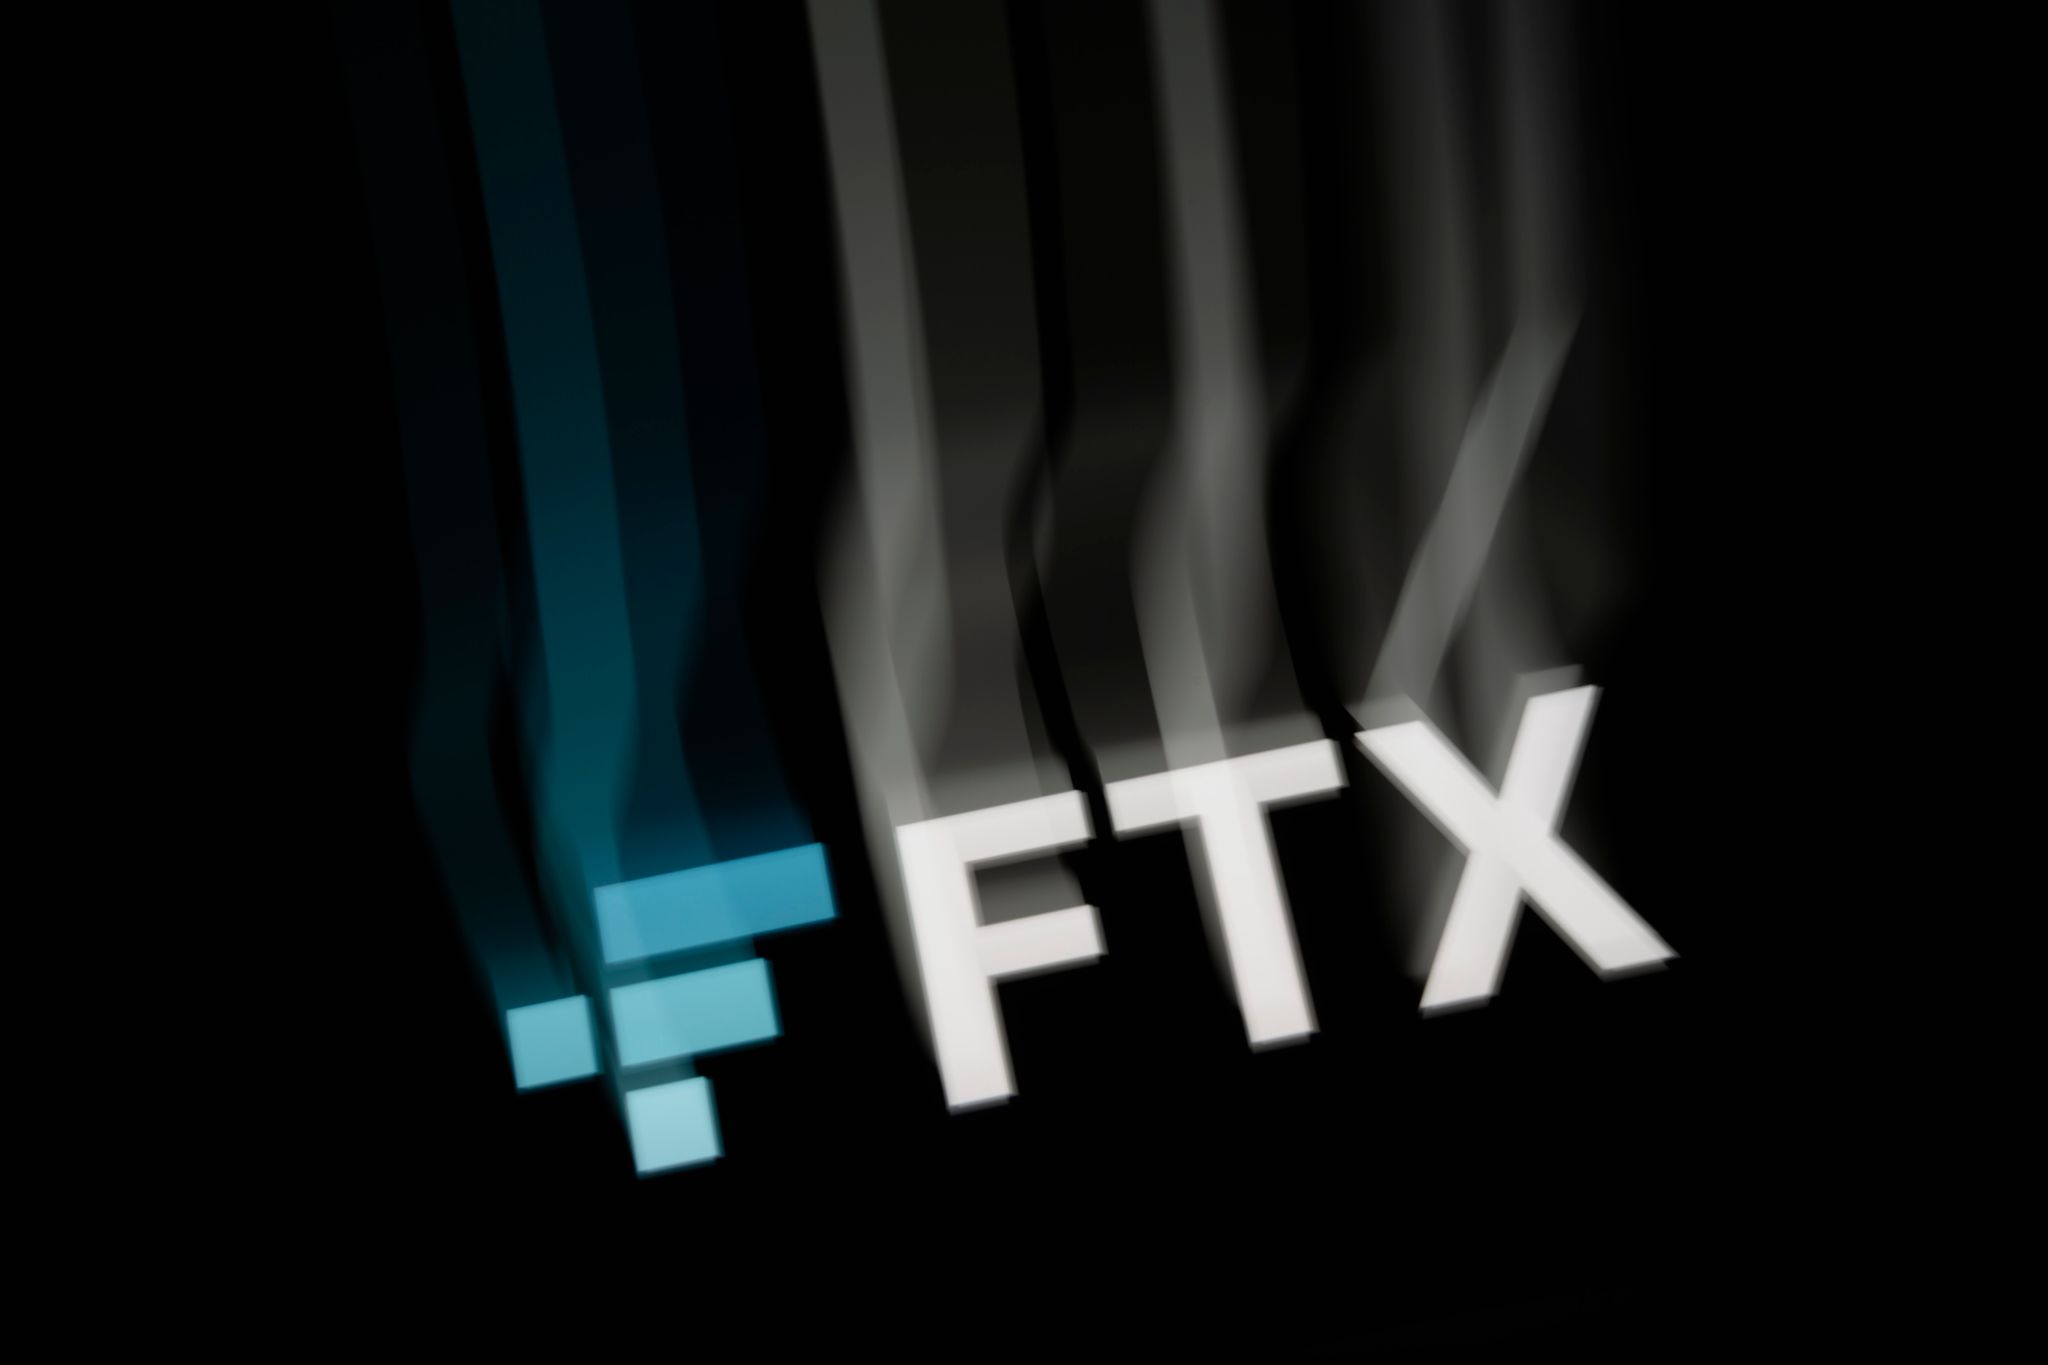 FTX-Gründer Bankman-Fried droht lange Haft